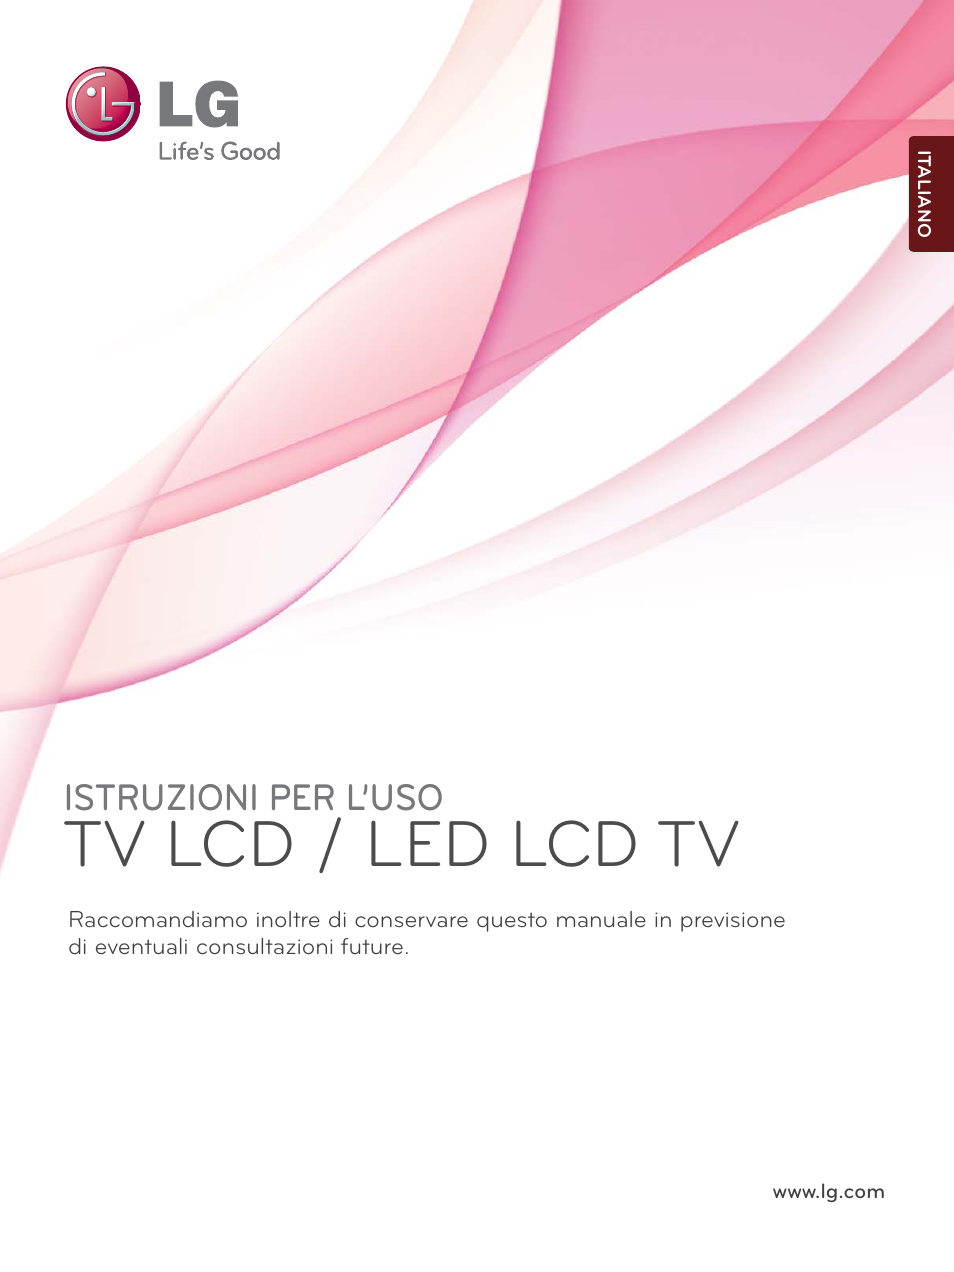 LG 32LE4500 Manuale d'uso | Pagine: 207